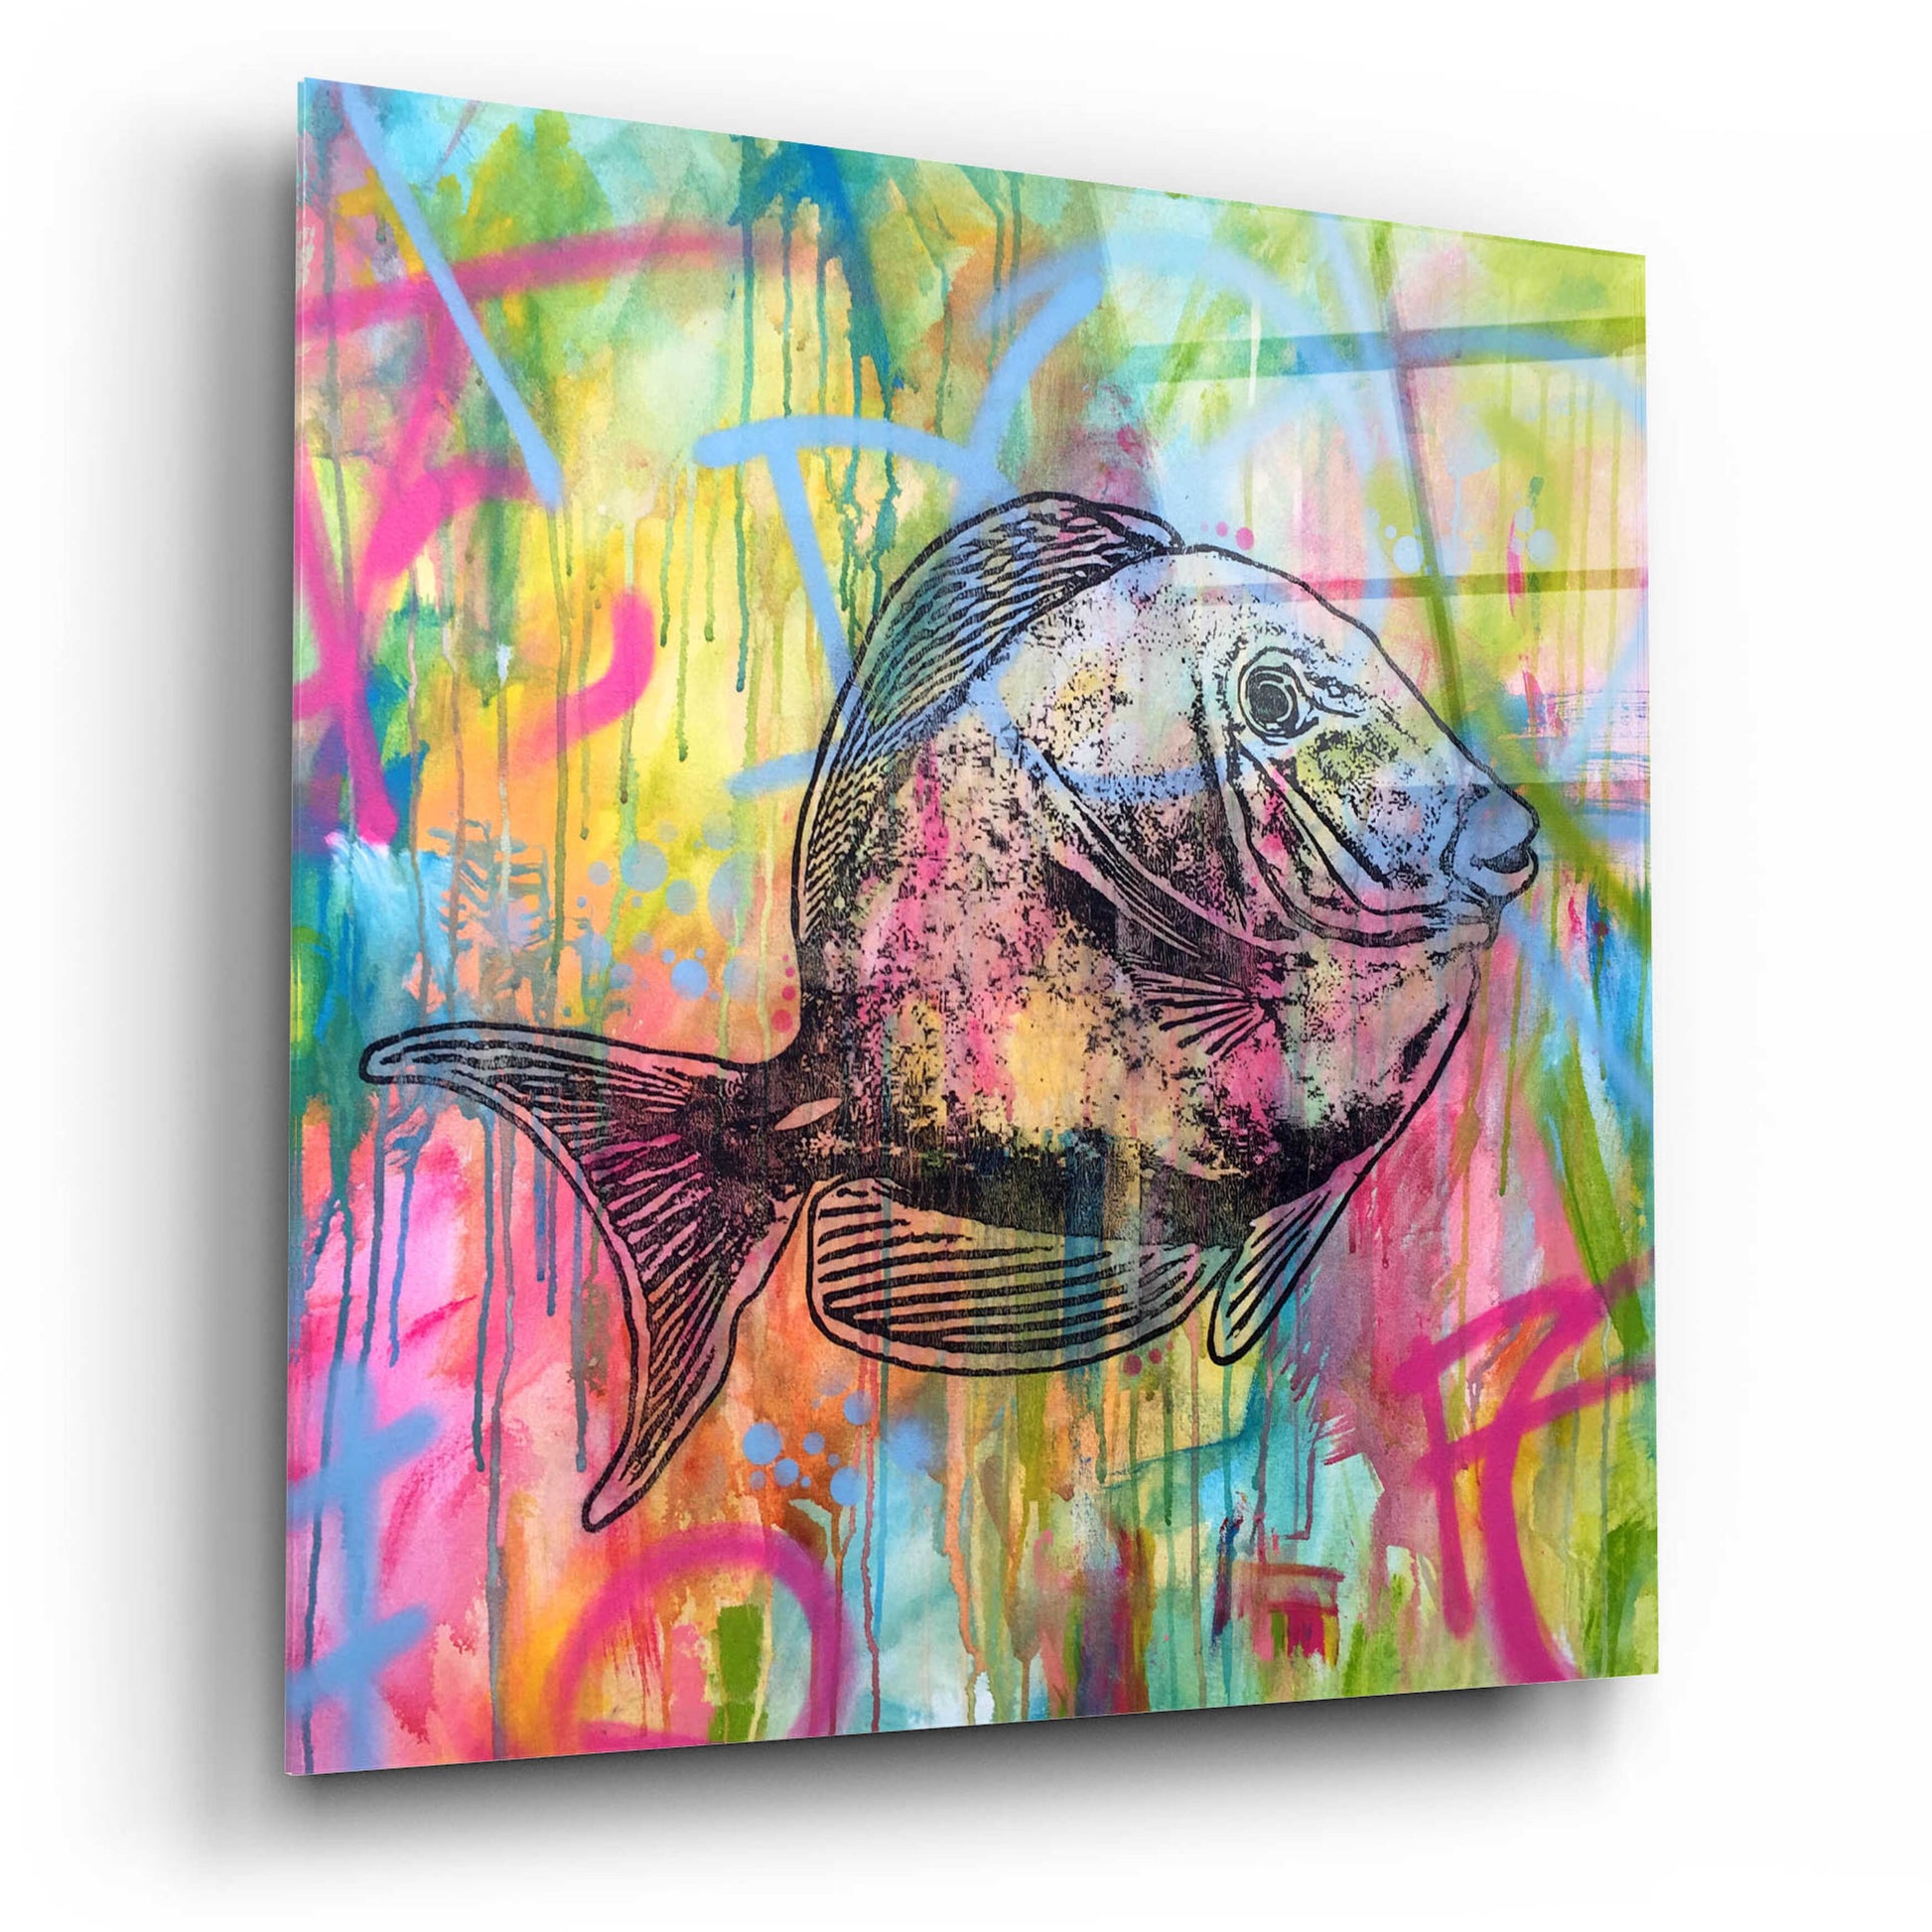 Epic Art 'Fishy Spray' by Dean Russo, Acrylic Glass Wall Art,12x12